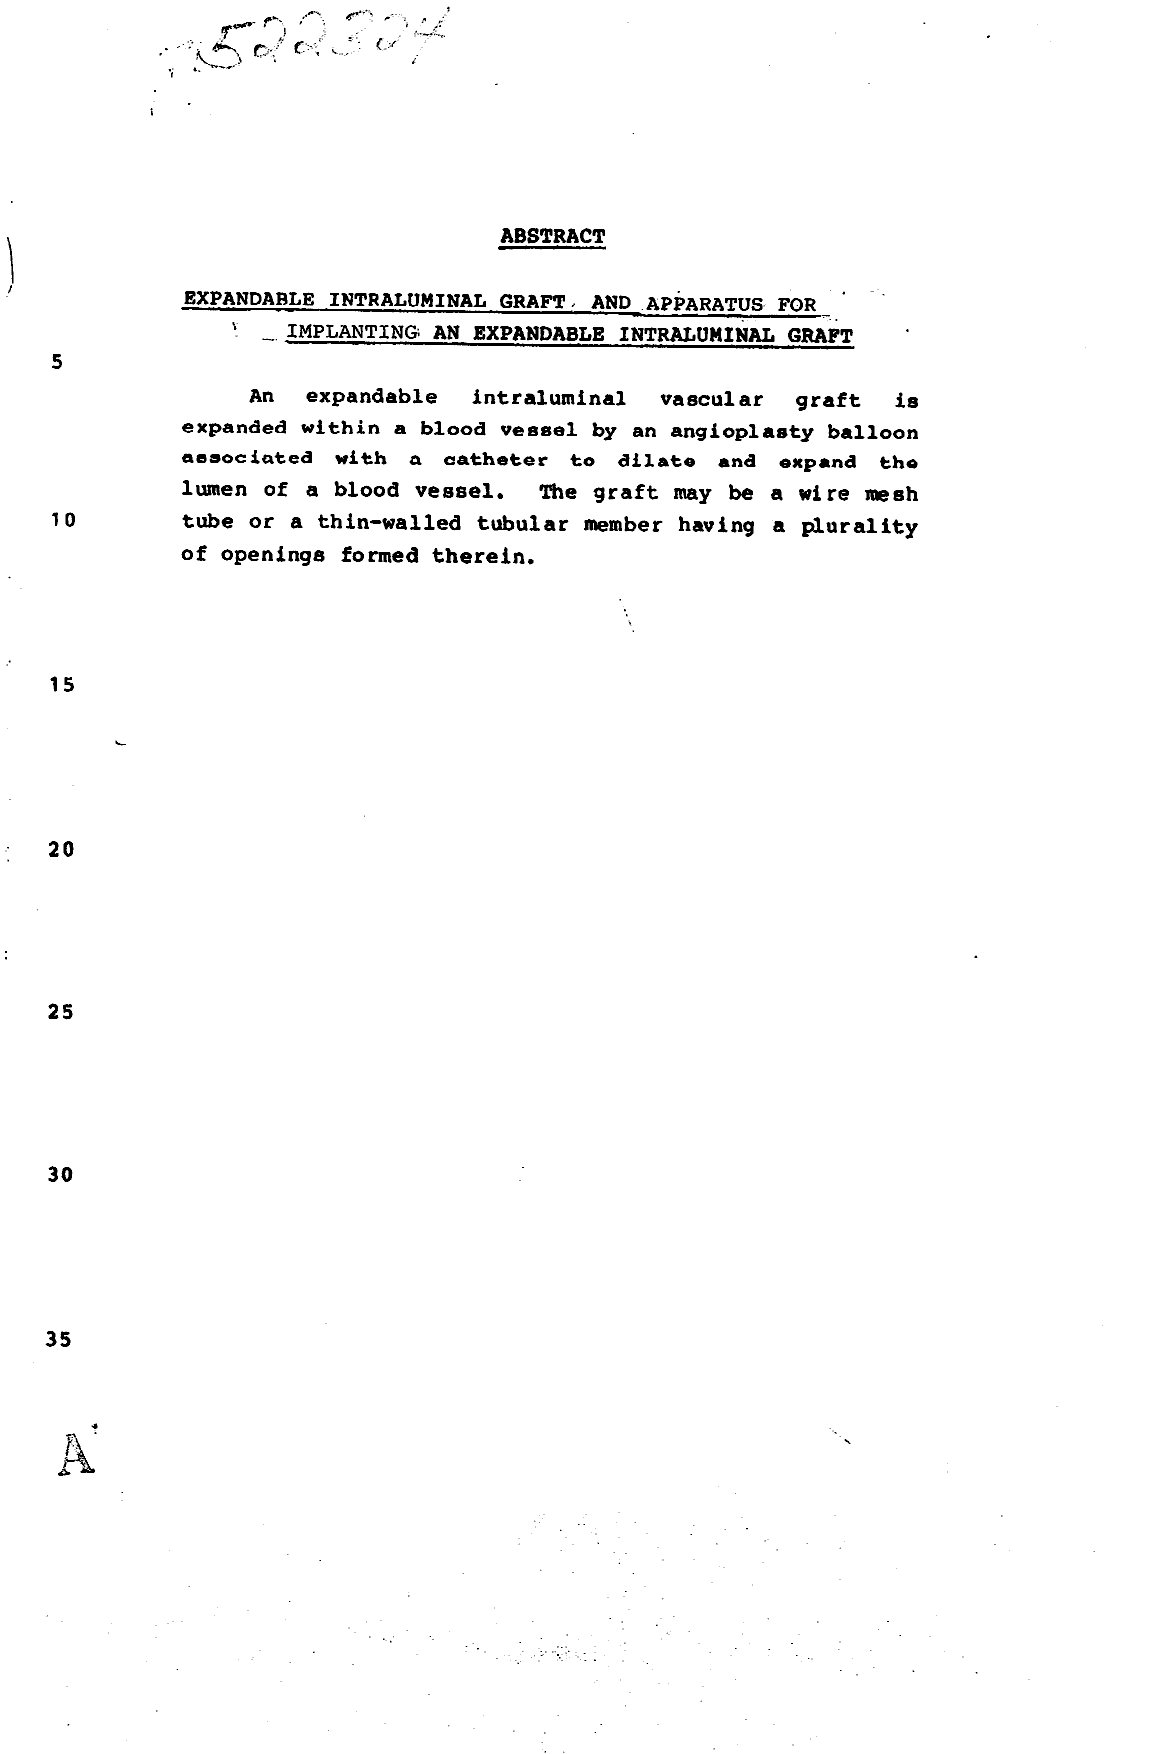 Document de brevet canadien 1281504. Abrégé 19931019. Image 1 de 1